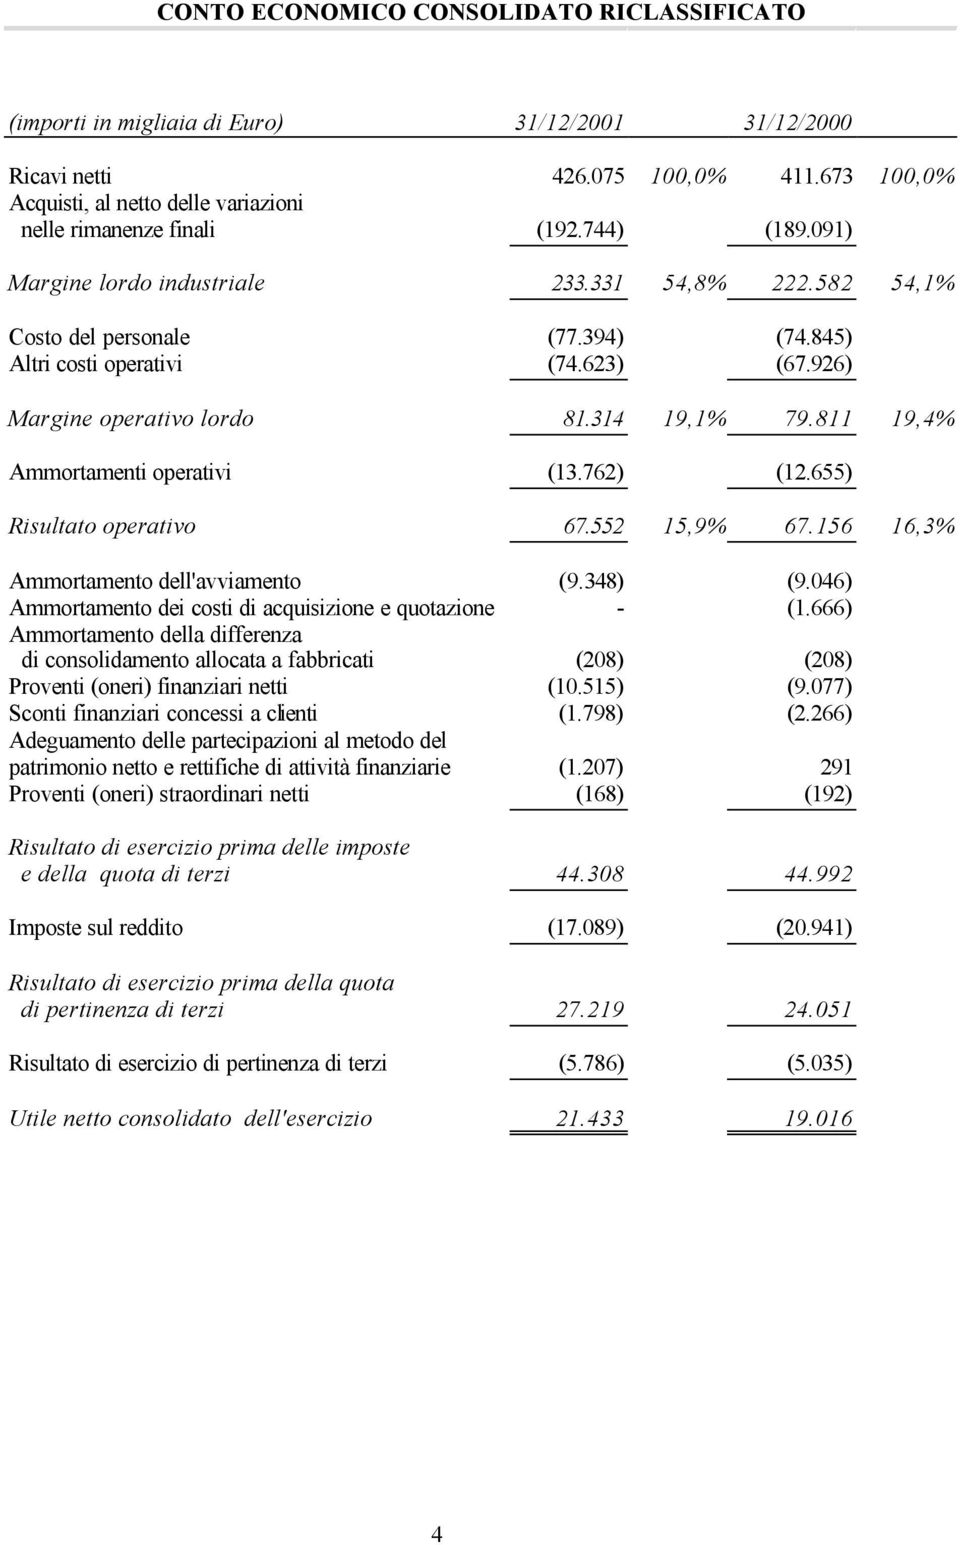 655) Risultato operativo 67.552 15,9% 67.156 16,3% Ammortamento dell'avviamento (9.348) (9.046) Ammortamento dei costi di acquisizione e quotazione - (1.